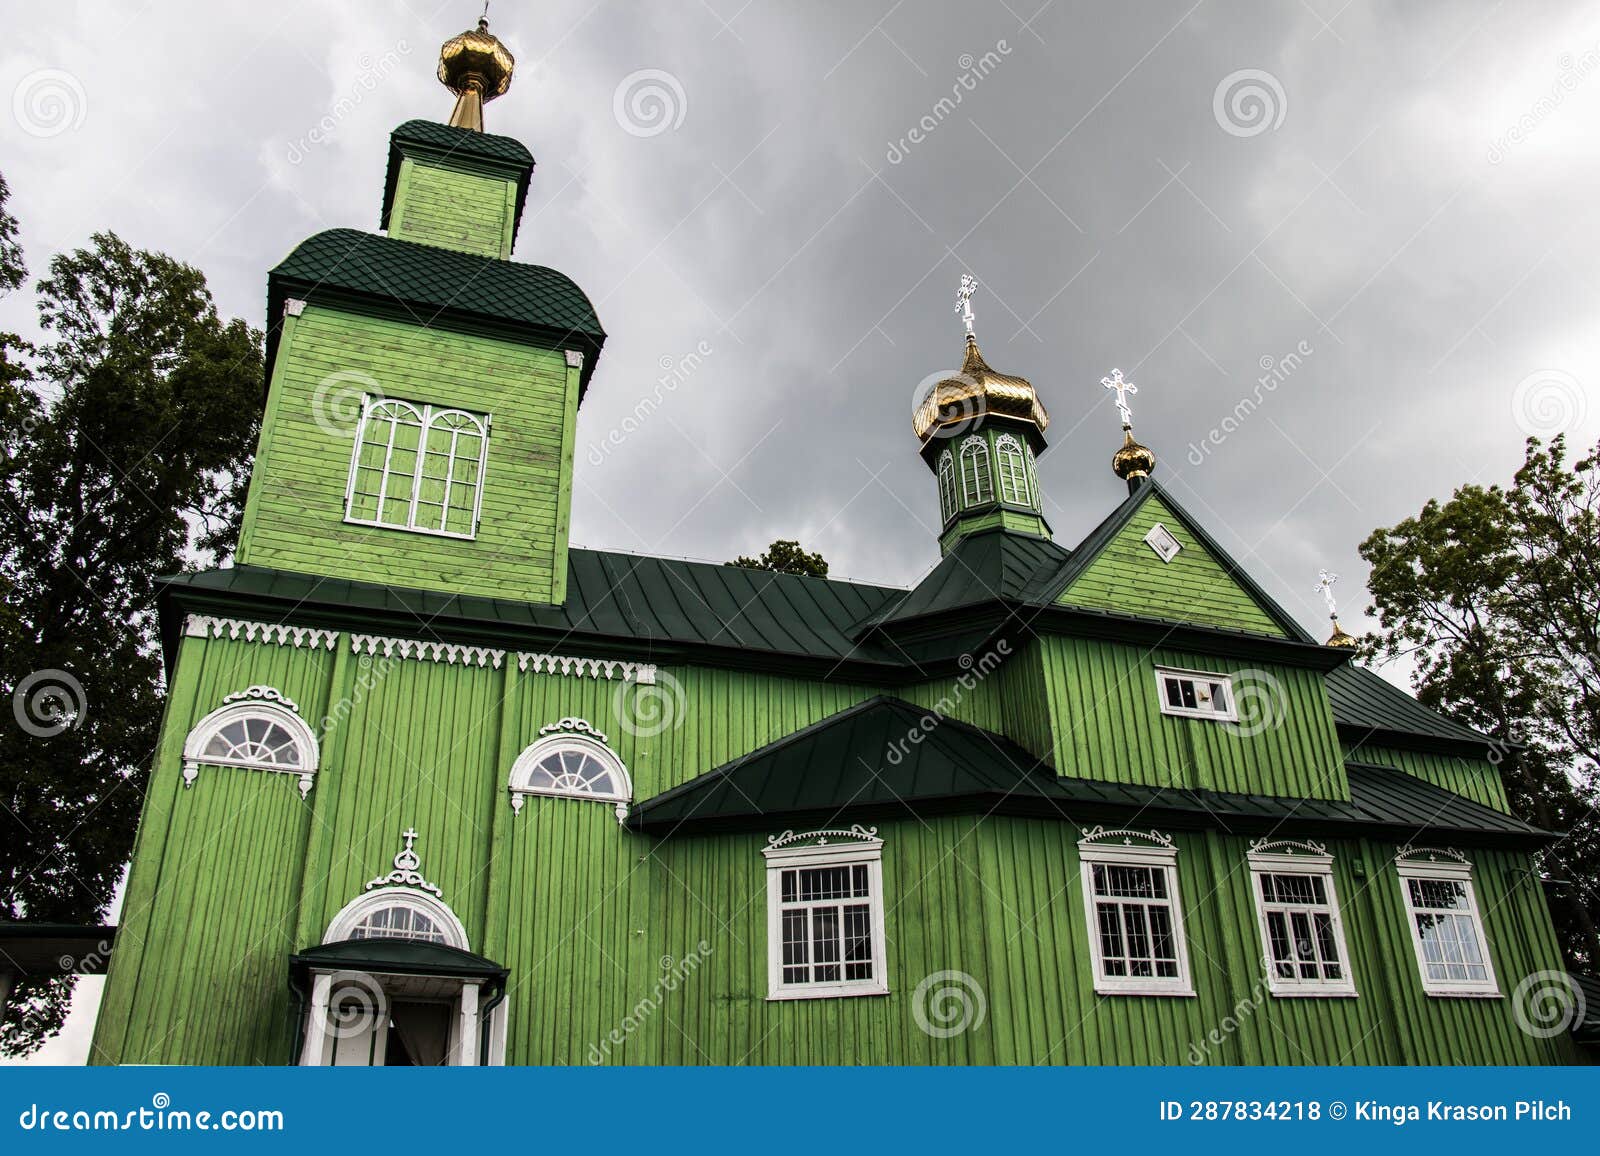 orthodox church of saint michael archangel in trzescianka, land of open shutters